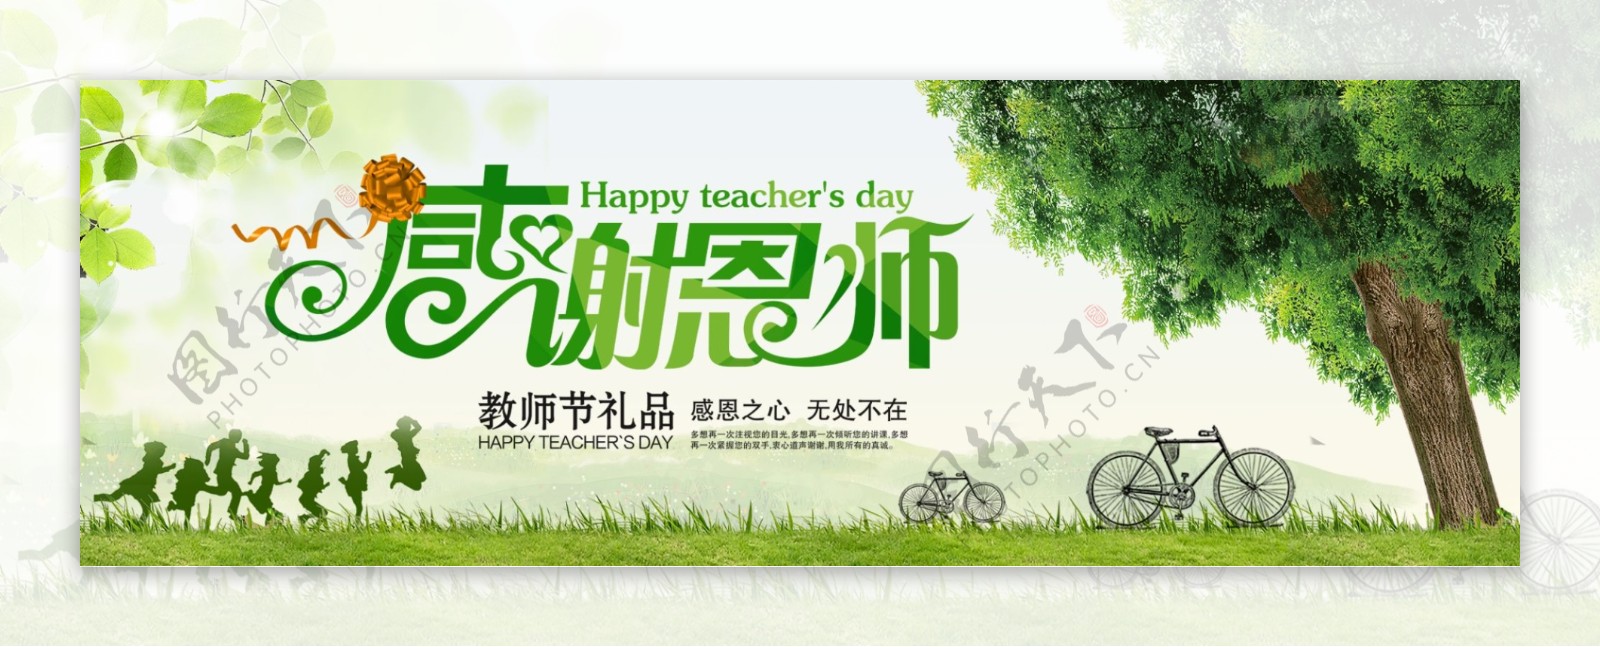 绿色小清新草地树叶教师节电商banner淘宝海报